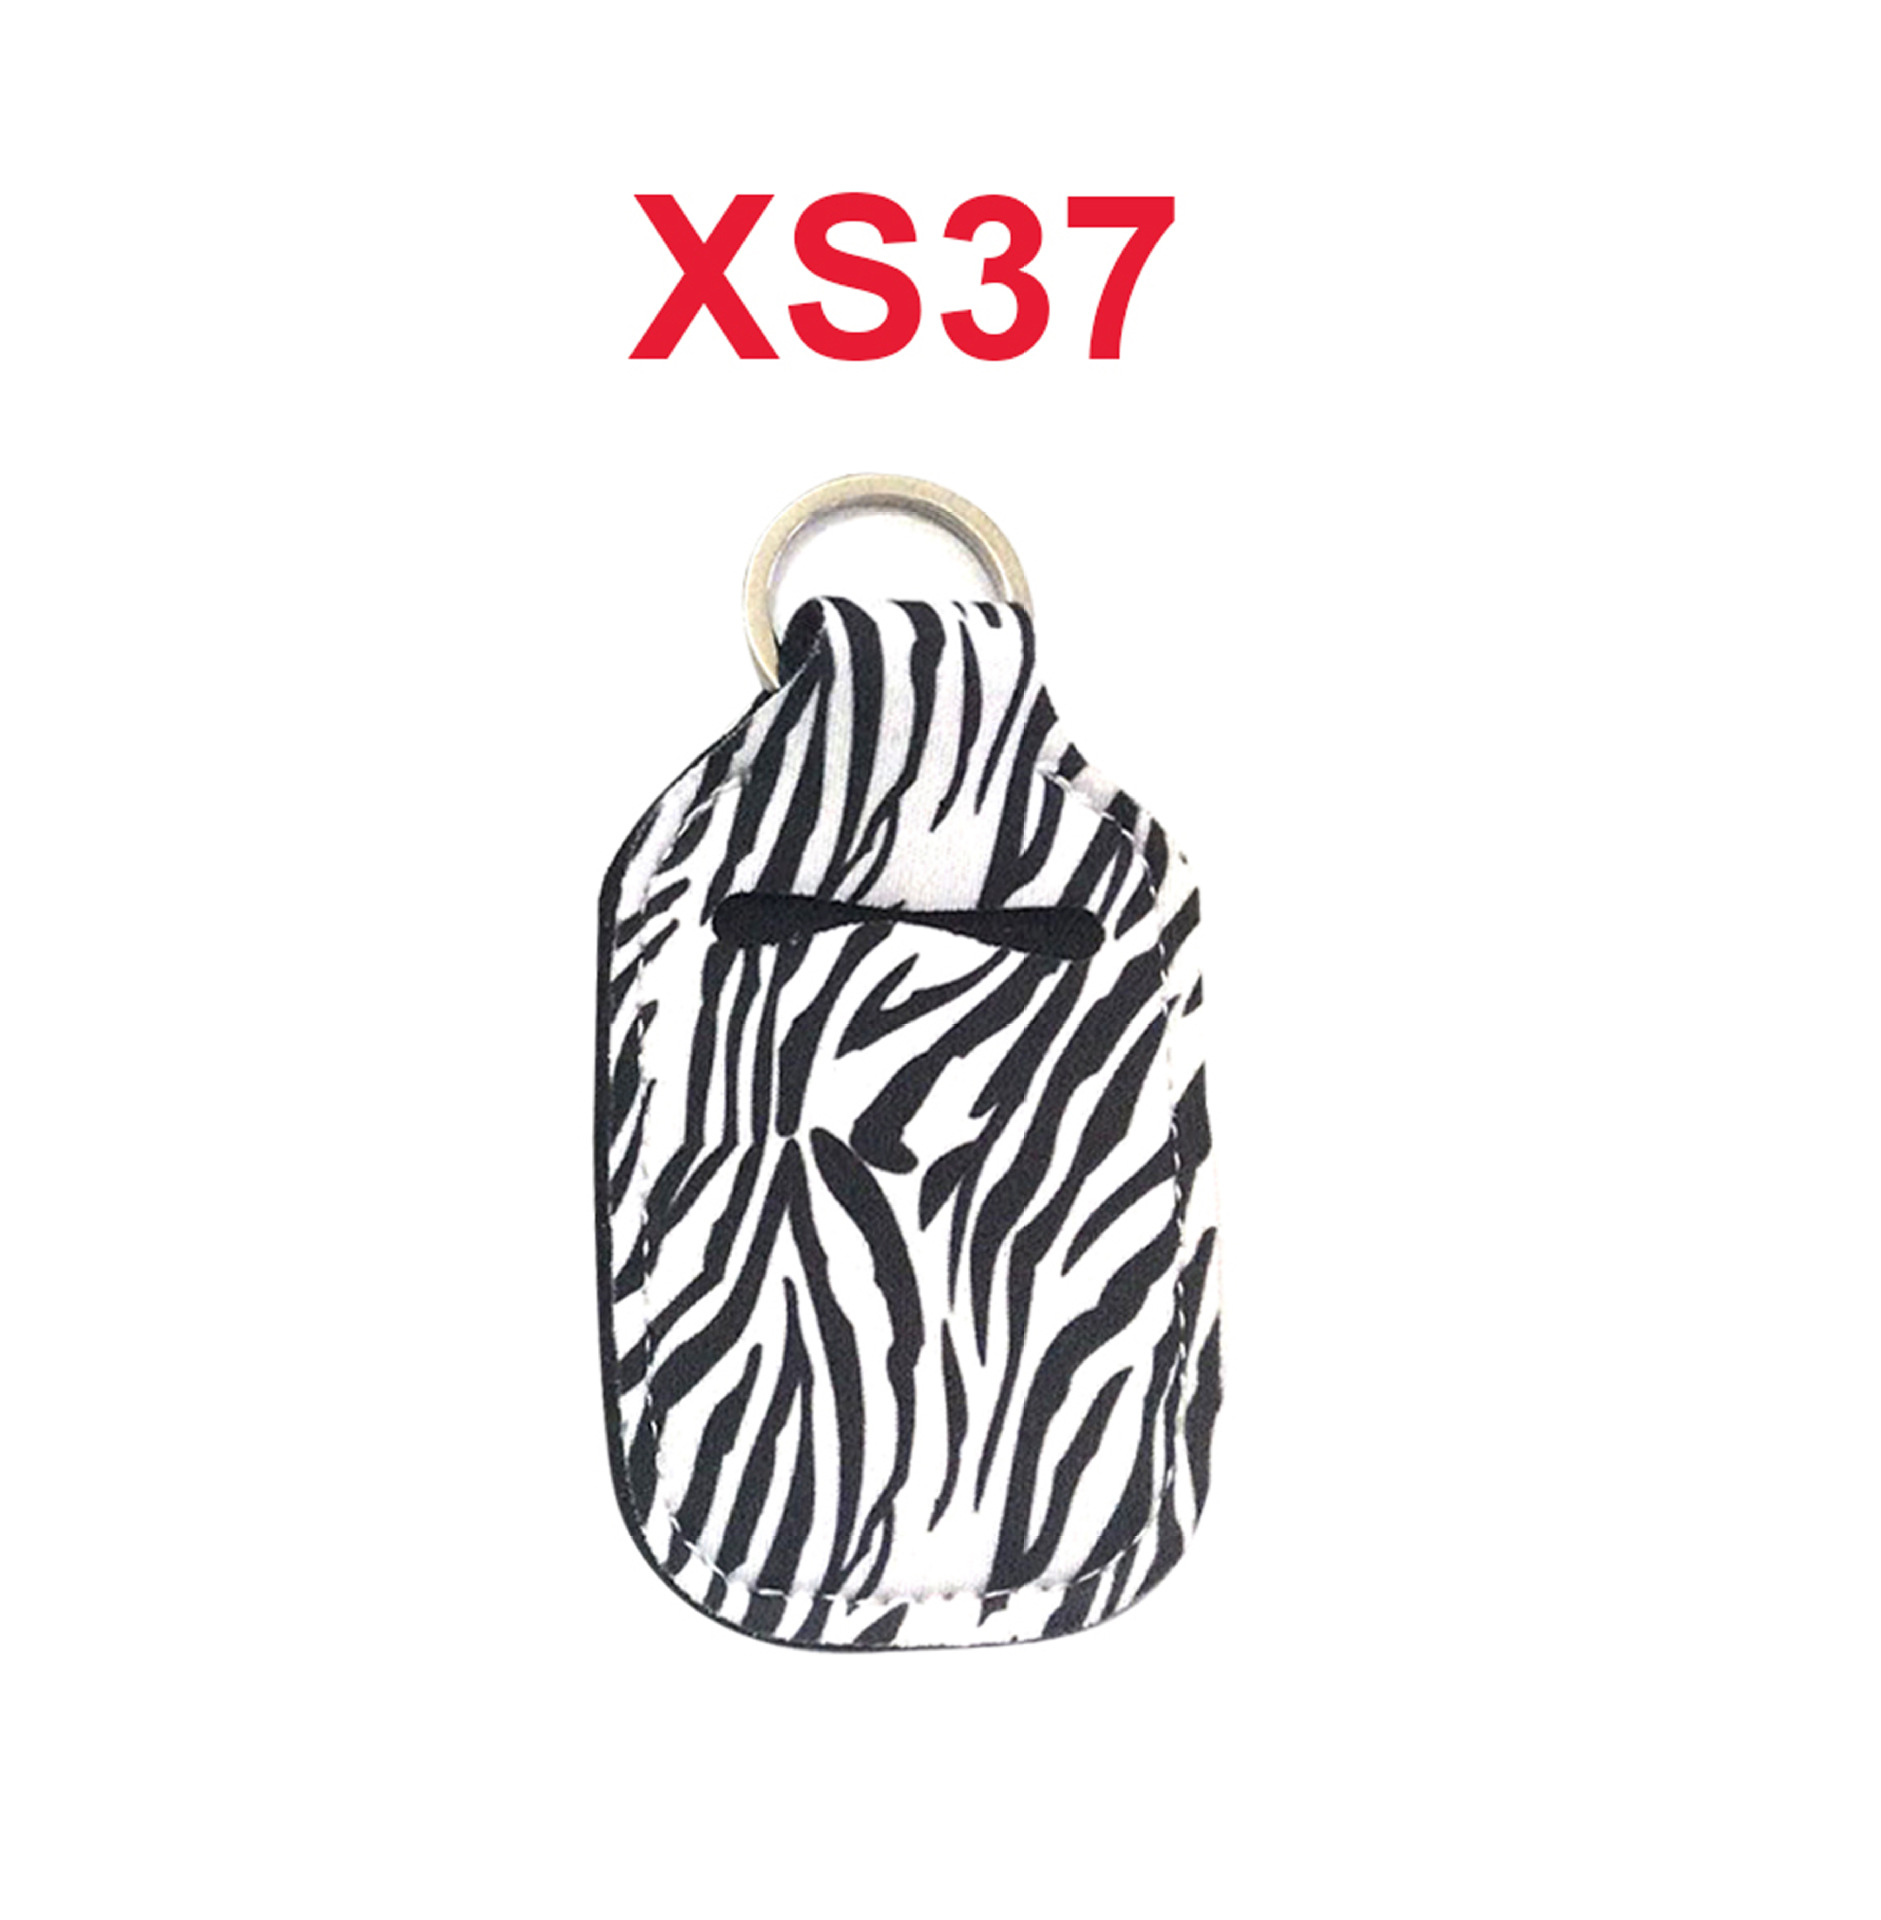 XS37